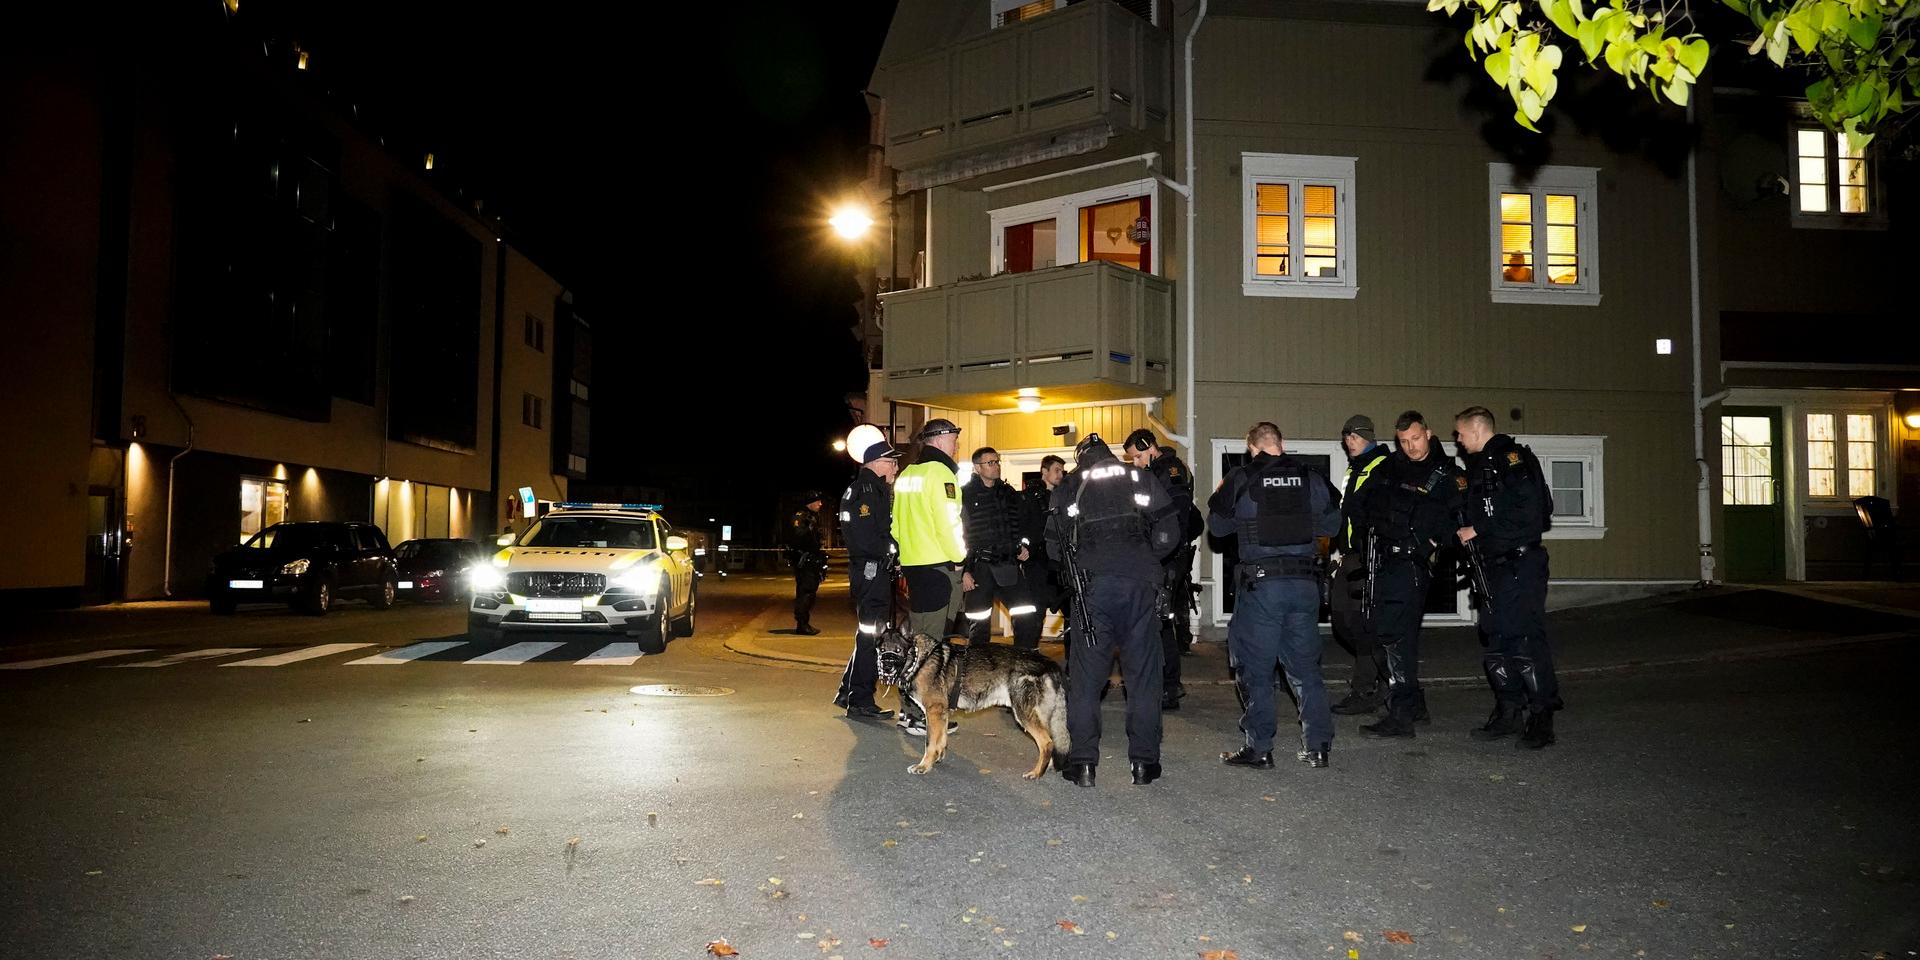 Situationen i Kongsberg beskrivs som svår att få en överblick av.